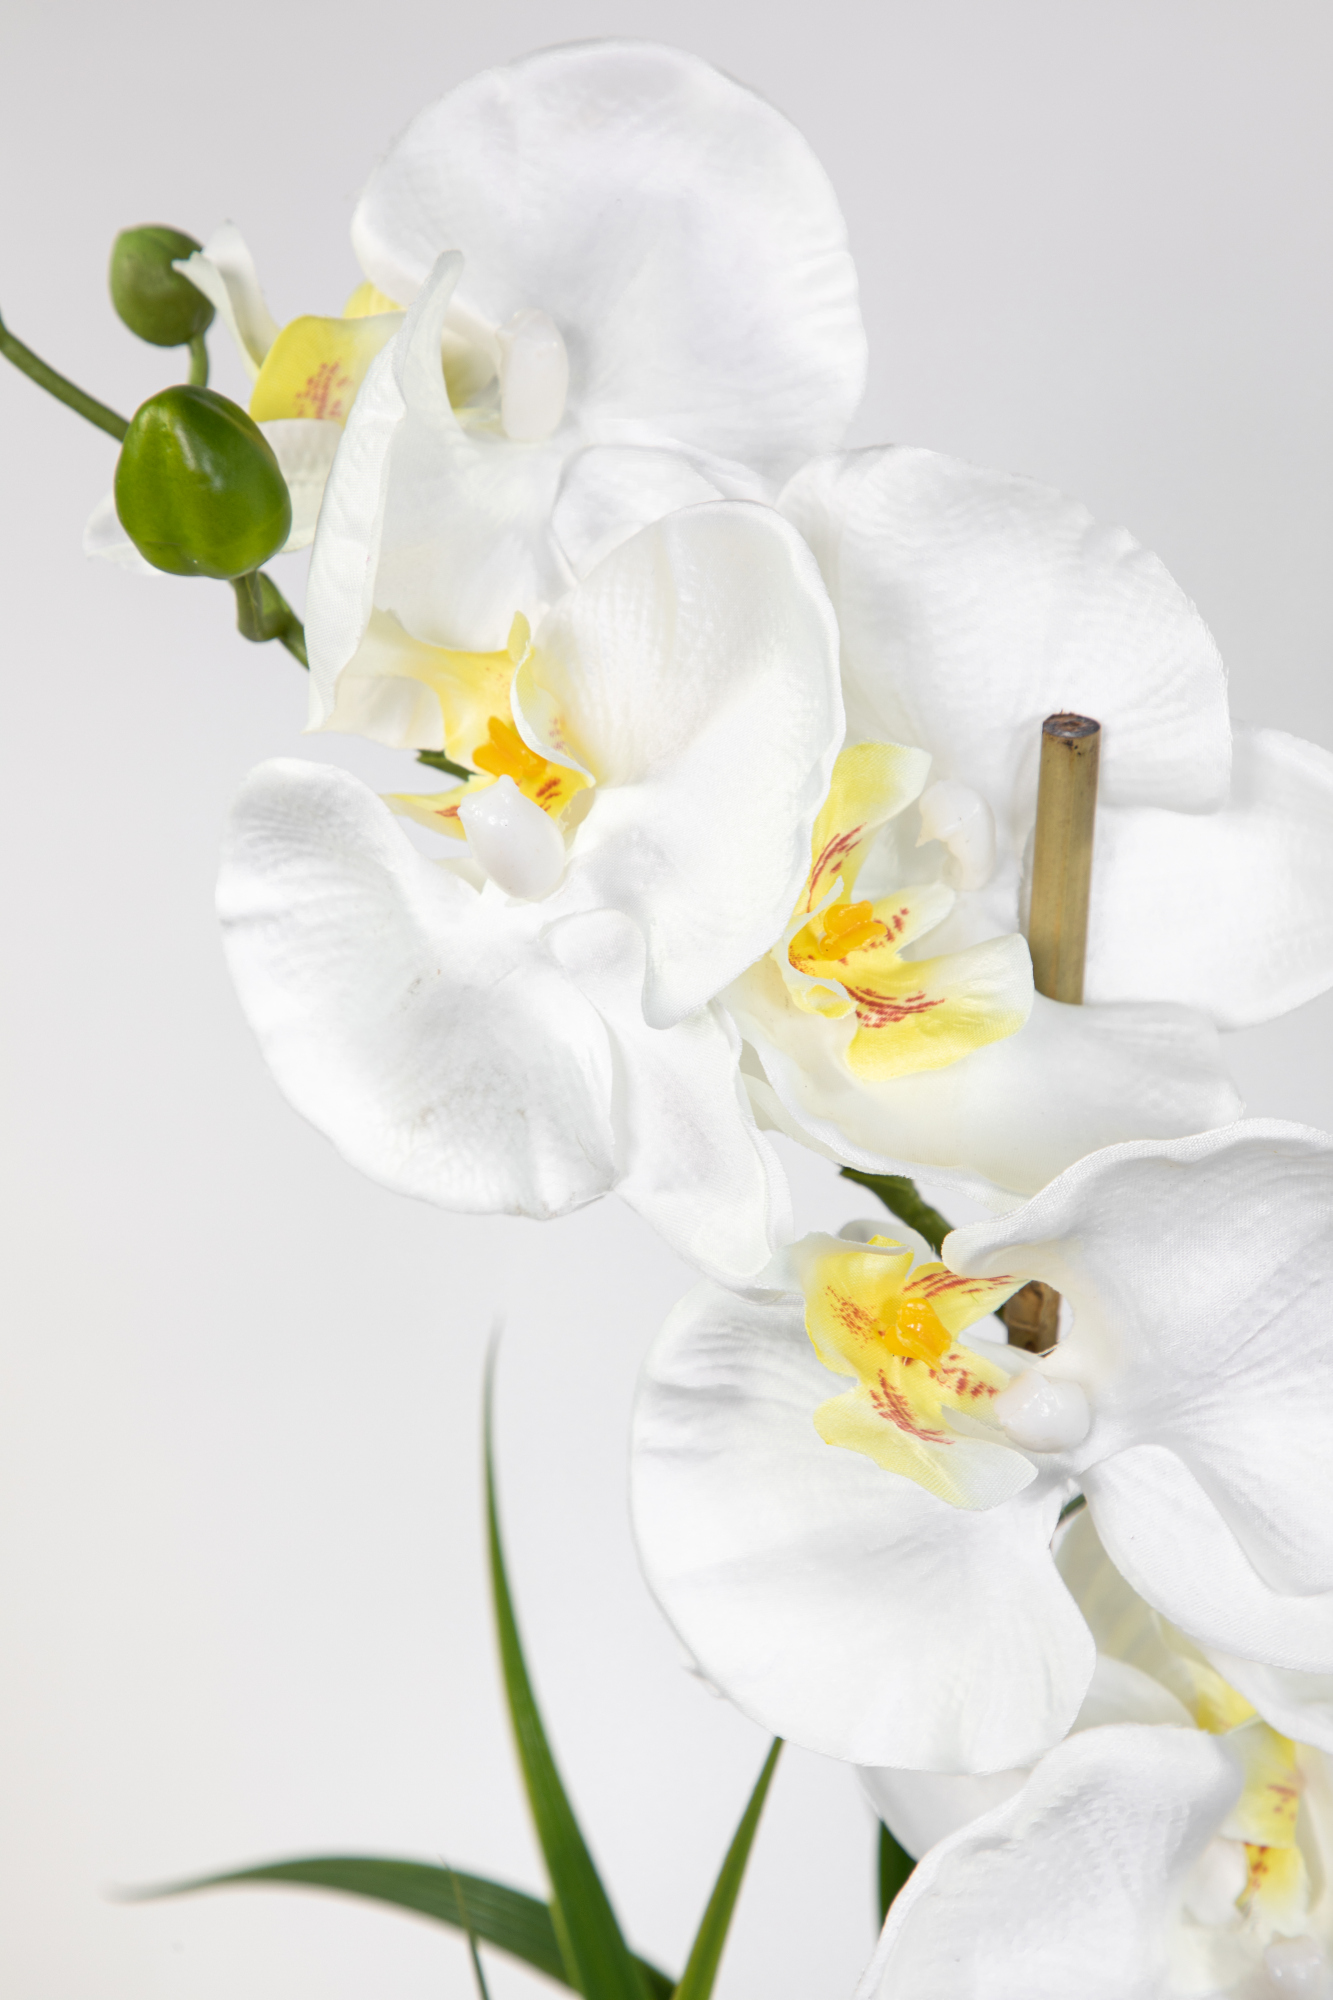 Terracottatopf Phalaenopsis Blumen GA künstliche Kunstblumen 75x60cm weiß im Orchidee